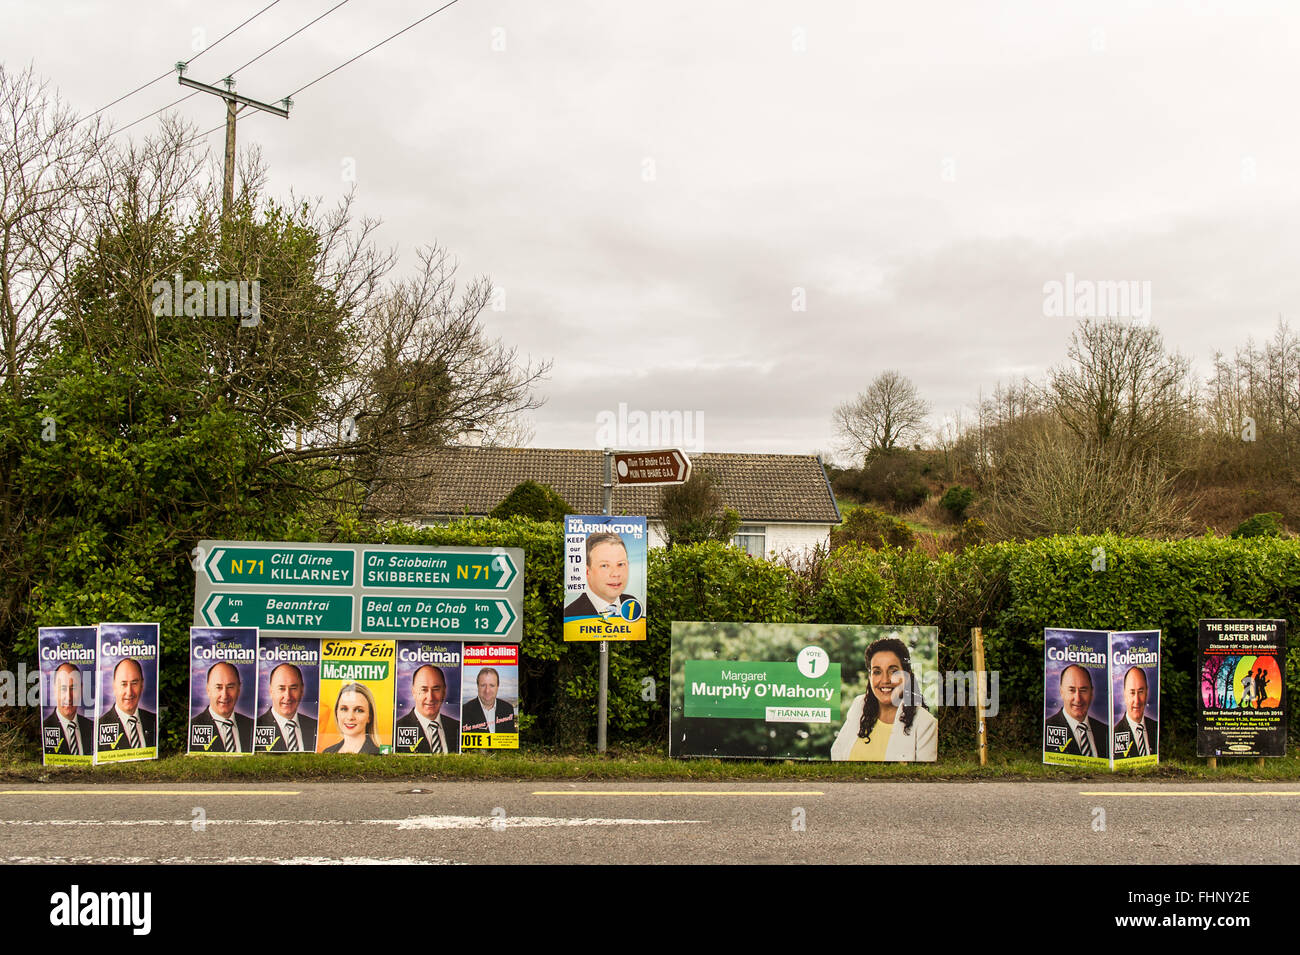 Carretera de West Cork carteles de candidatos para la Elección General irlandesa de 2016. Foto de stock